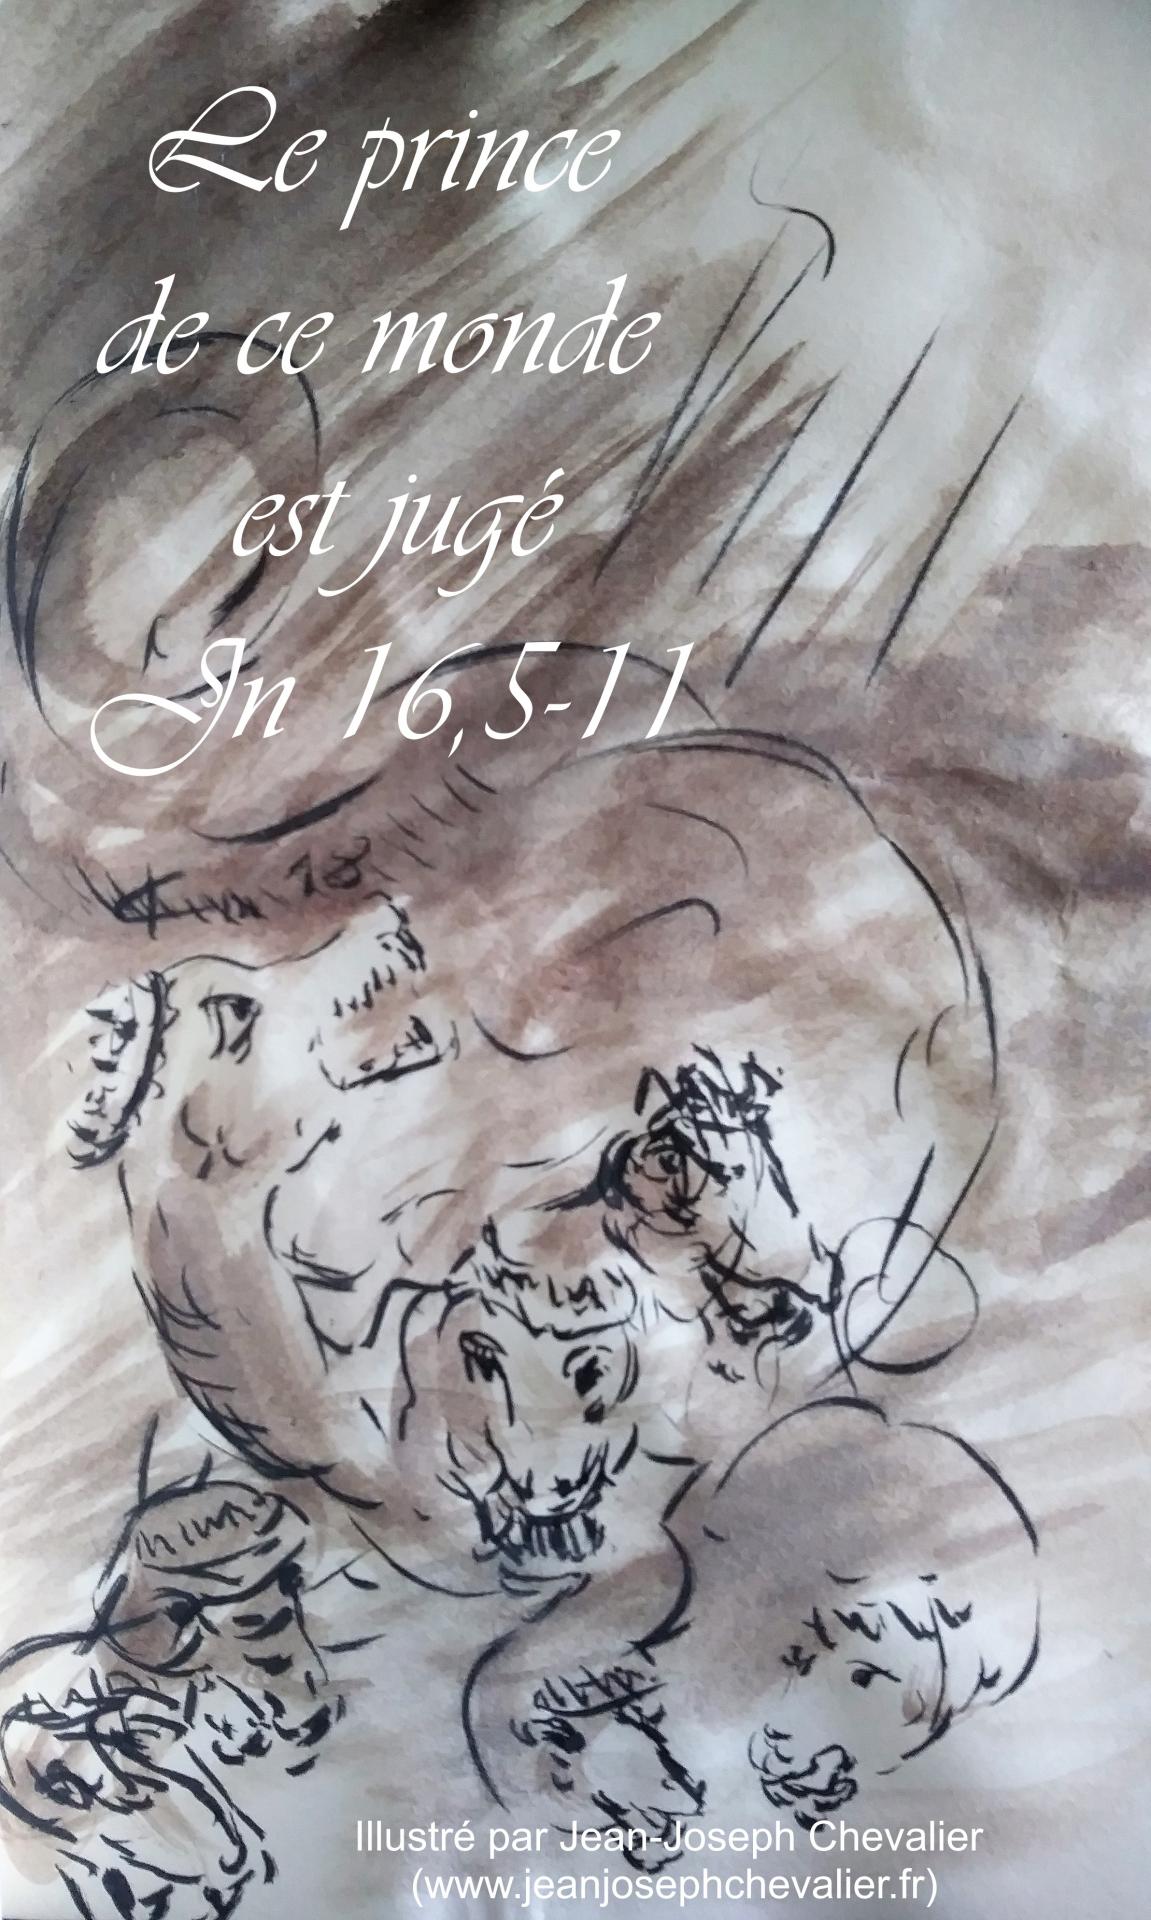 8 mai 2018 evangile du jour illustre par un dessin au lavis de jean joseph chevalier image